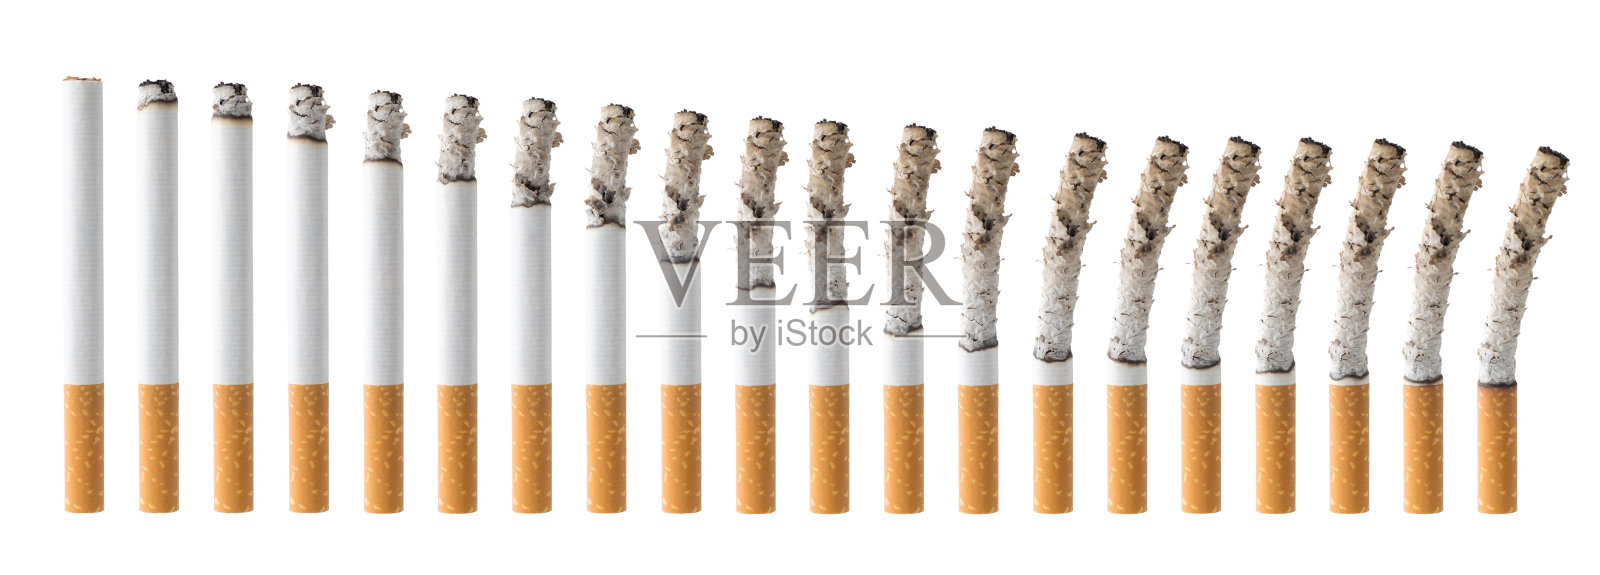 一组不同燃烧阶段的香烟照片摄影图片